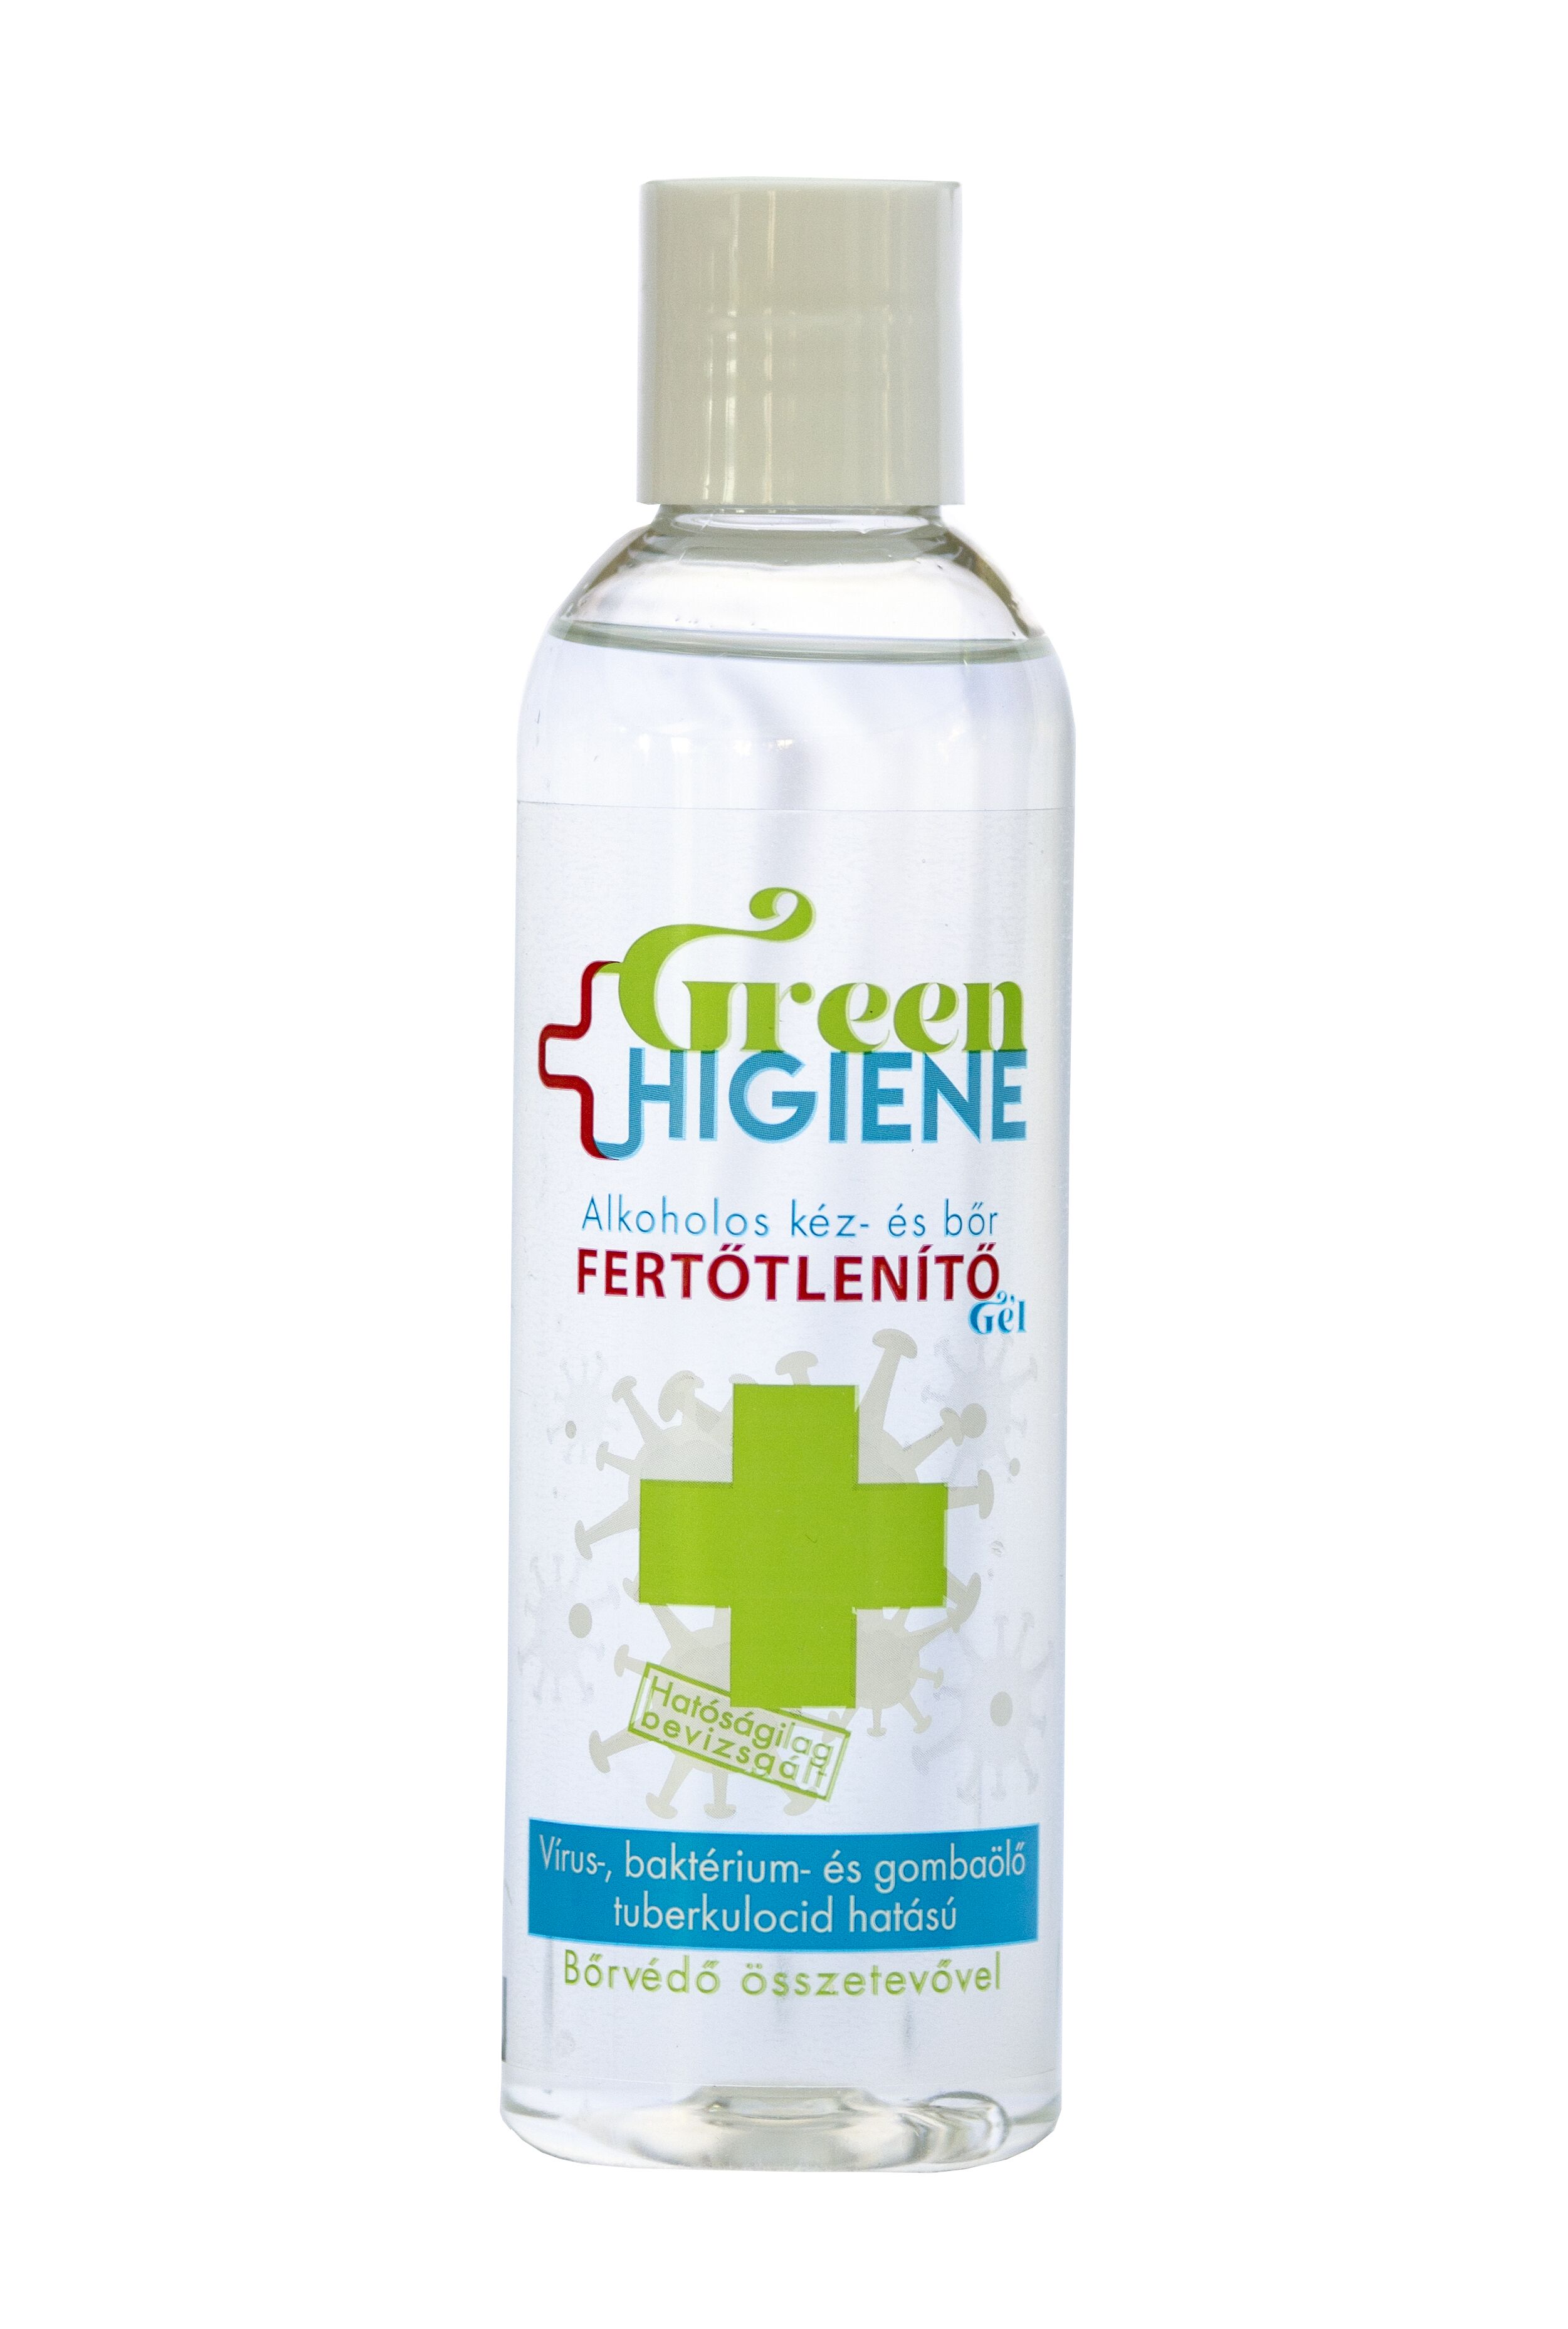 *Green Higiene Alkoholos Kéz- és bőrfertőtlenítő gél billenő kupakkal 200 ml